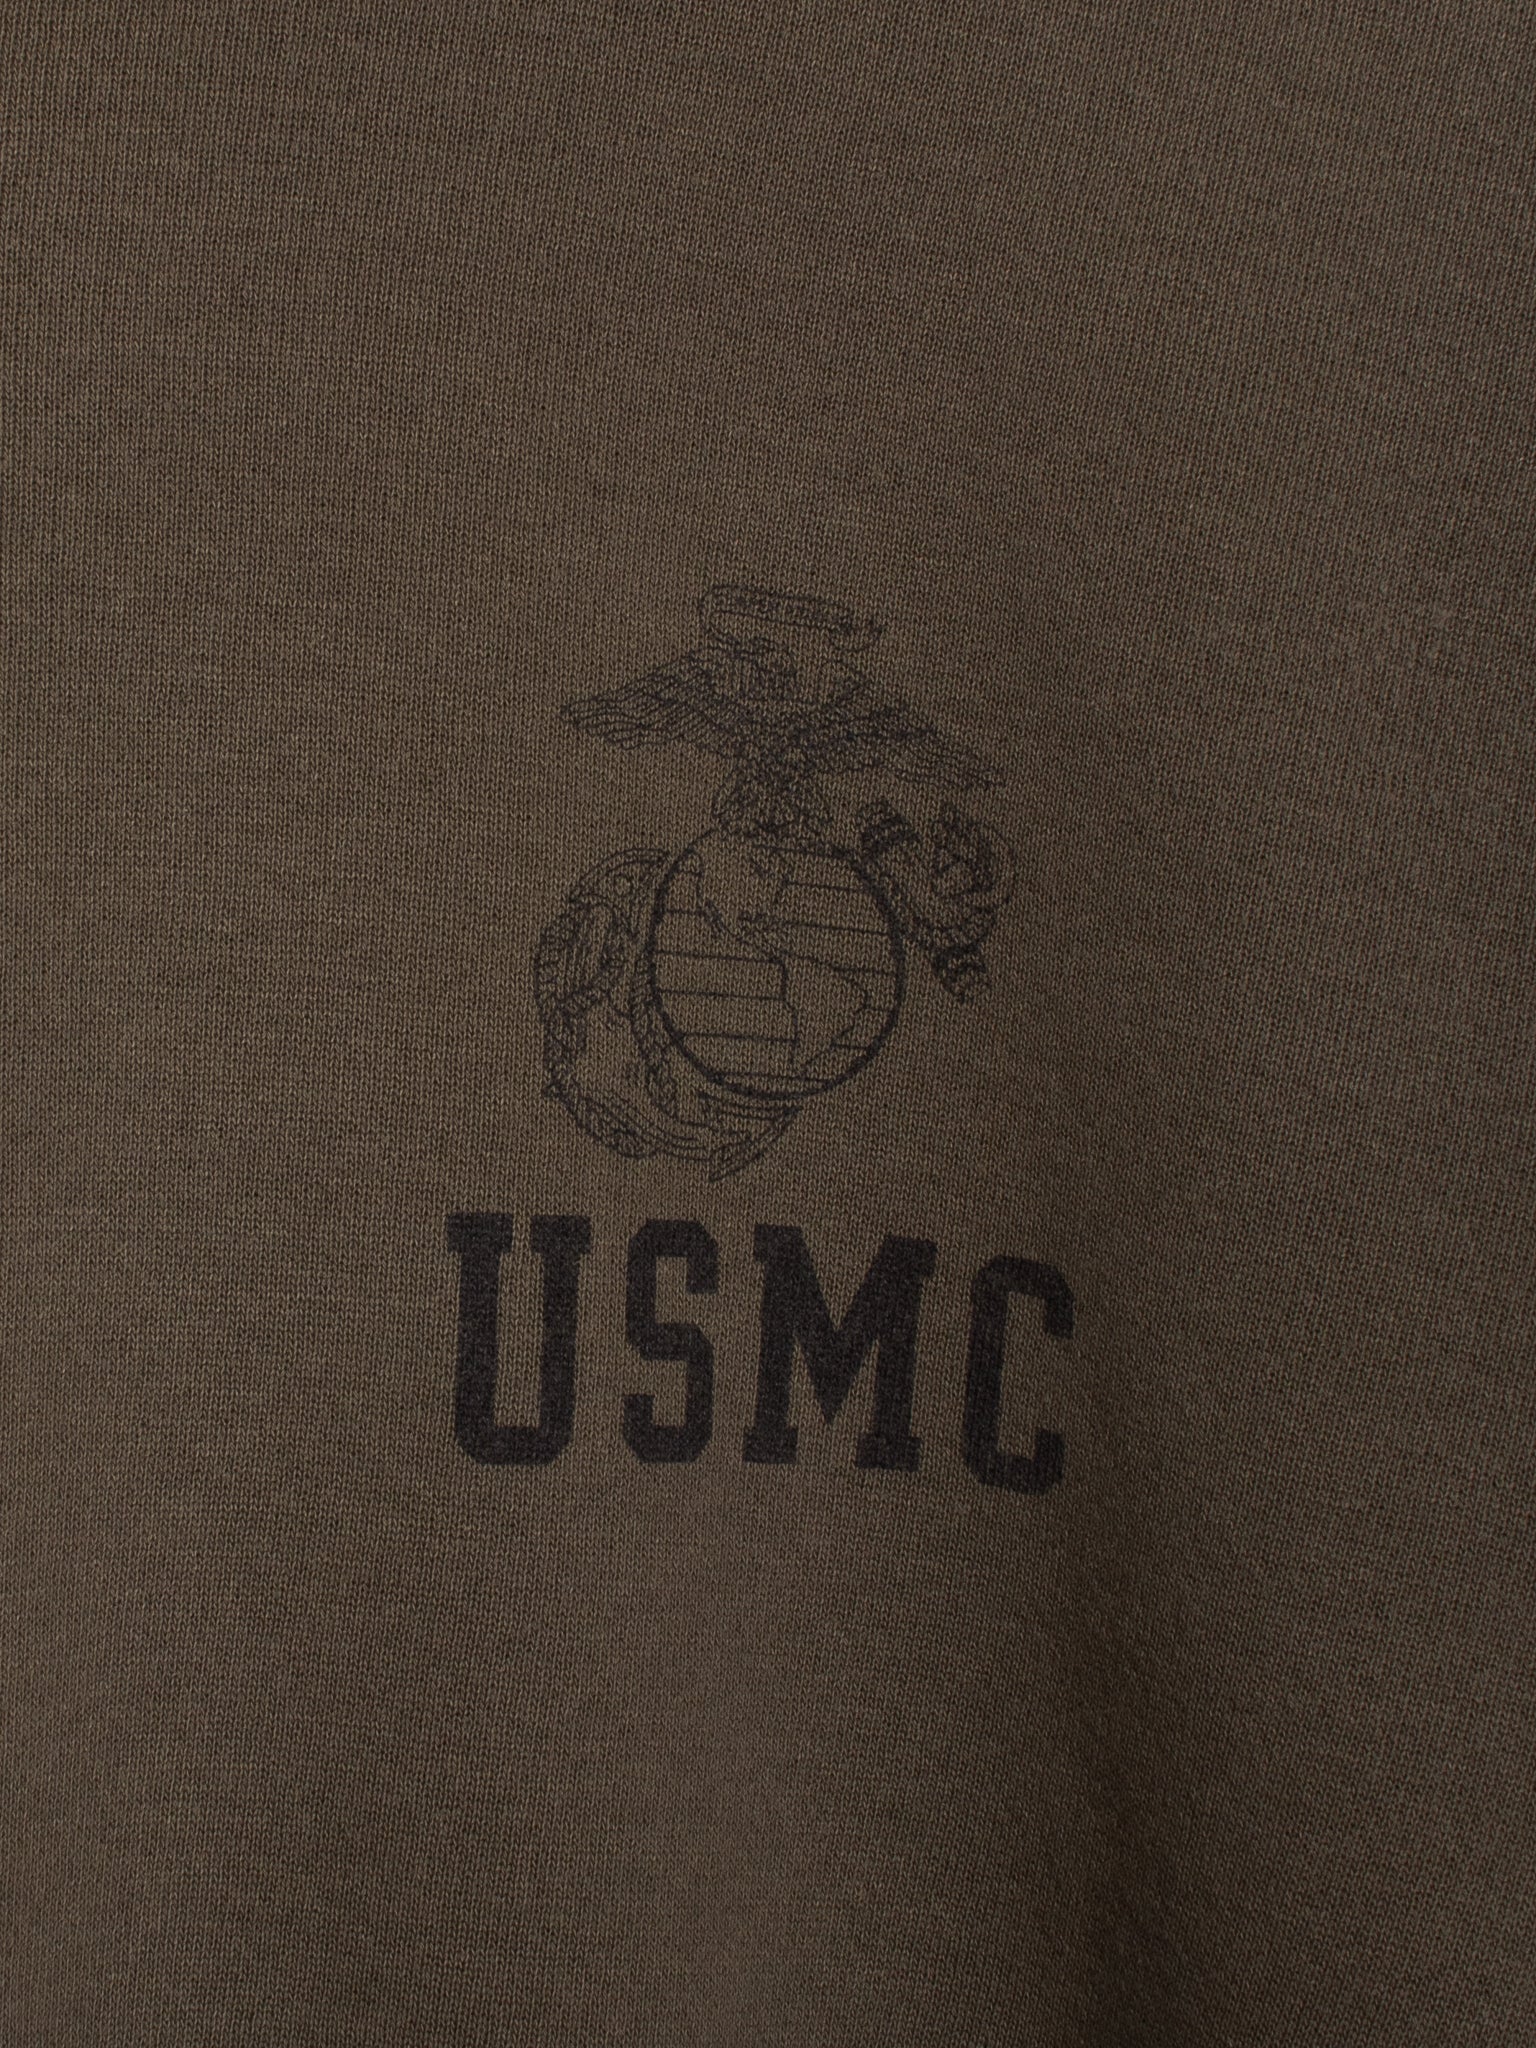 sweaters & knits 90s USMC Sweatshirt - L